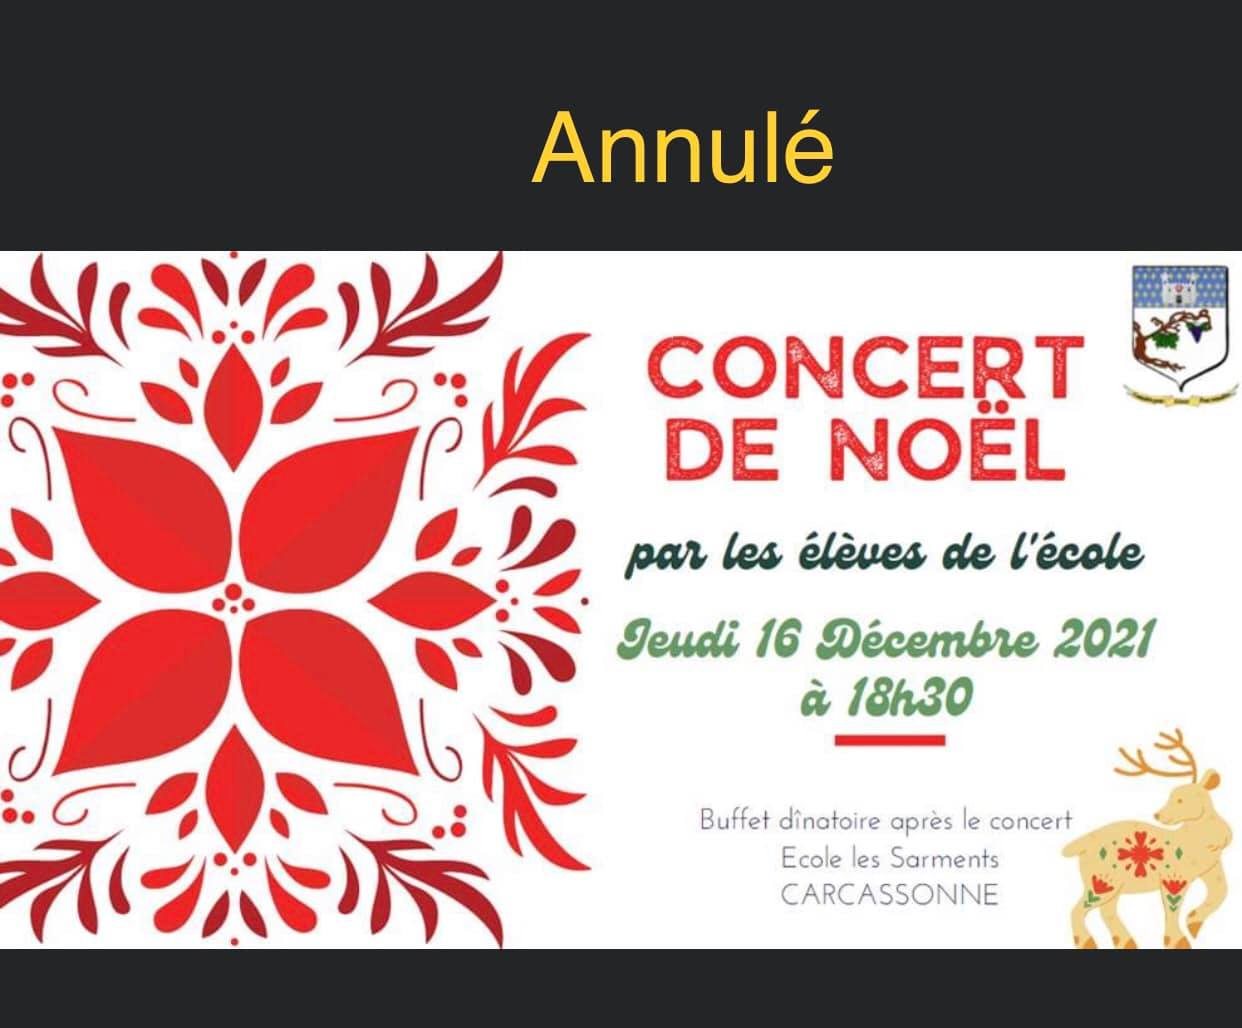 [Annulé] Concert de Noël par les élèves de l'école de Carcassonne - Jeudi 16 Décembre 2021 à 18h30